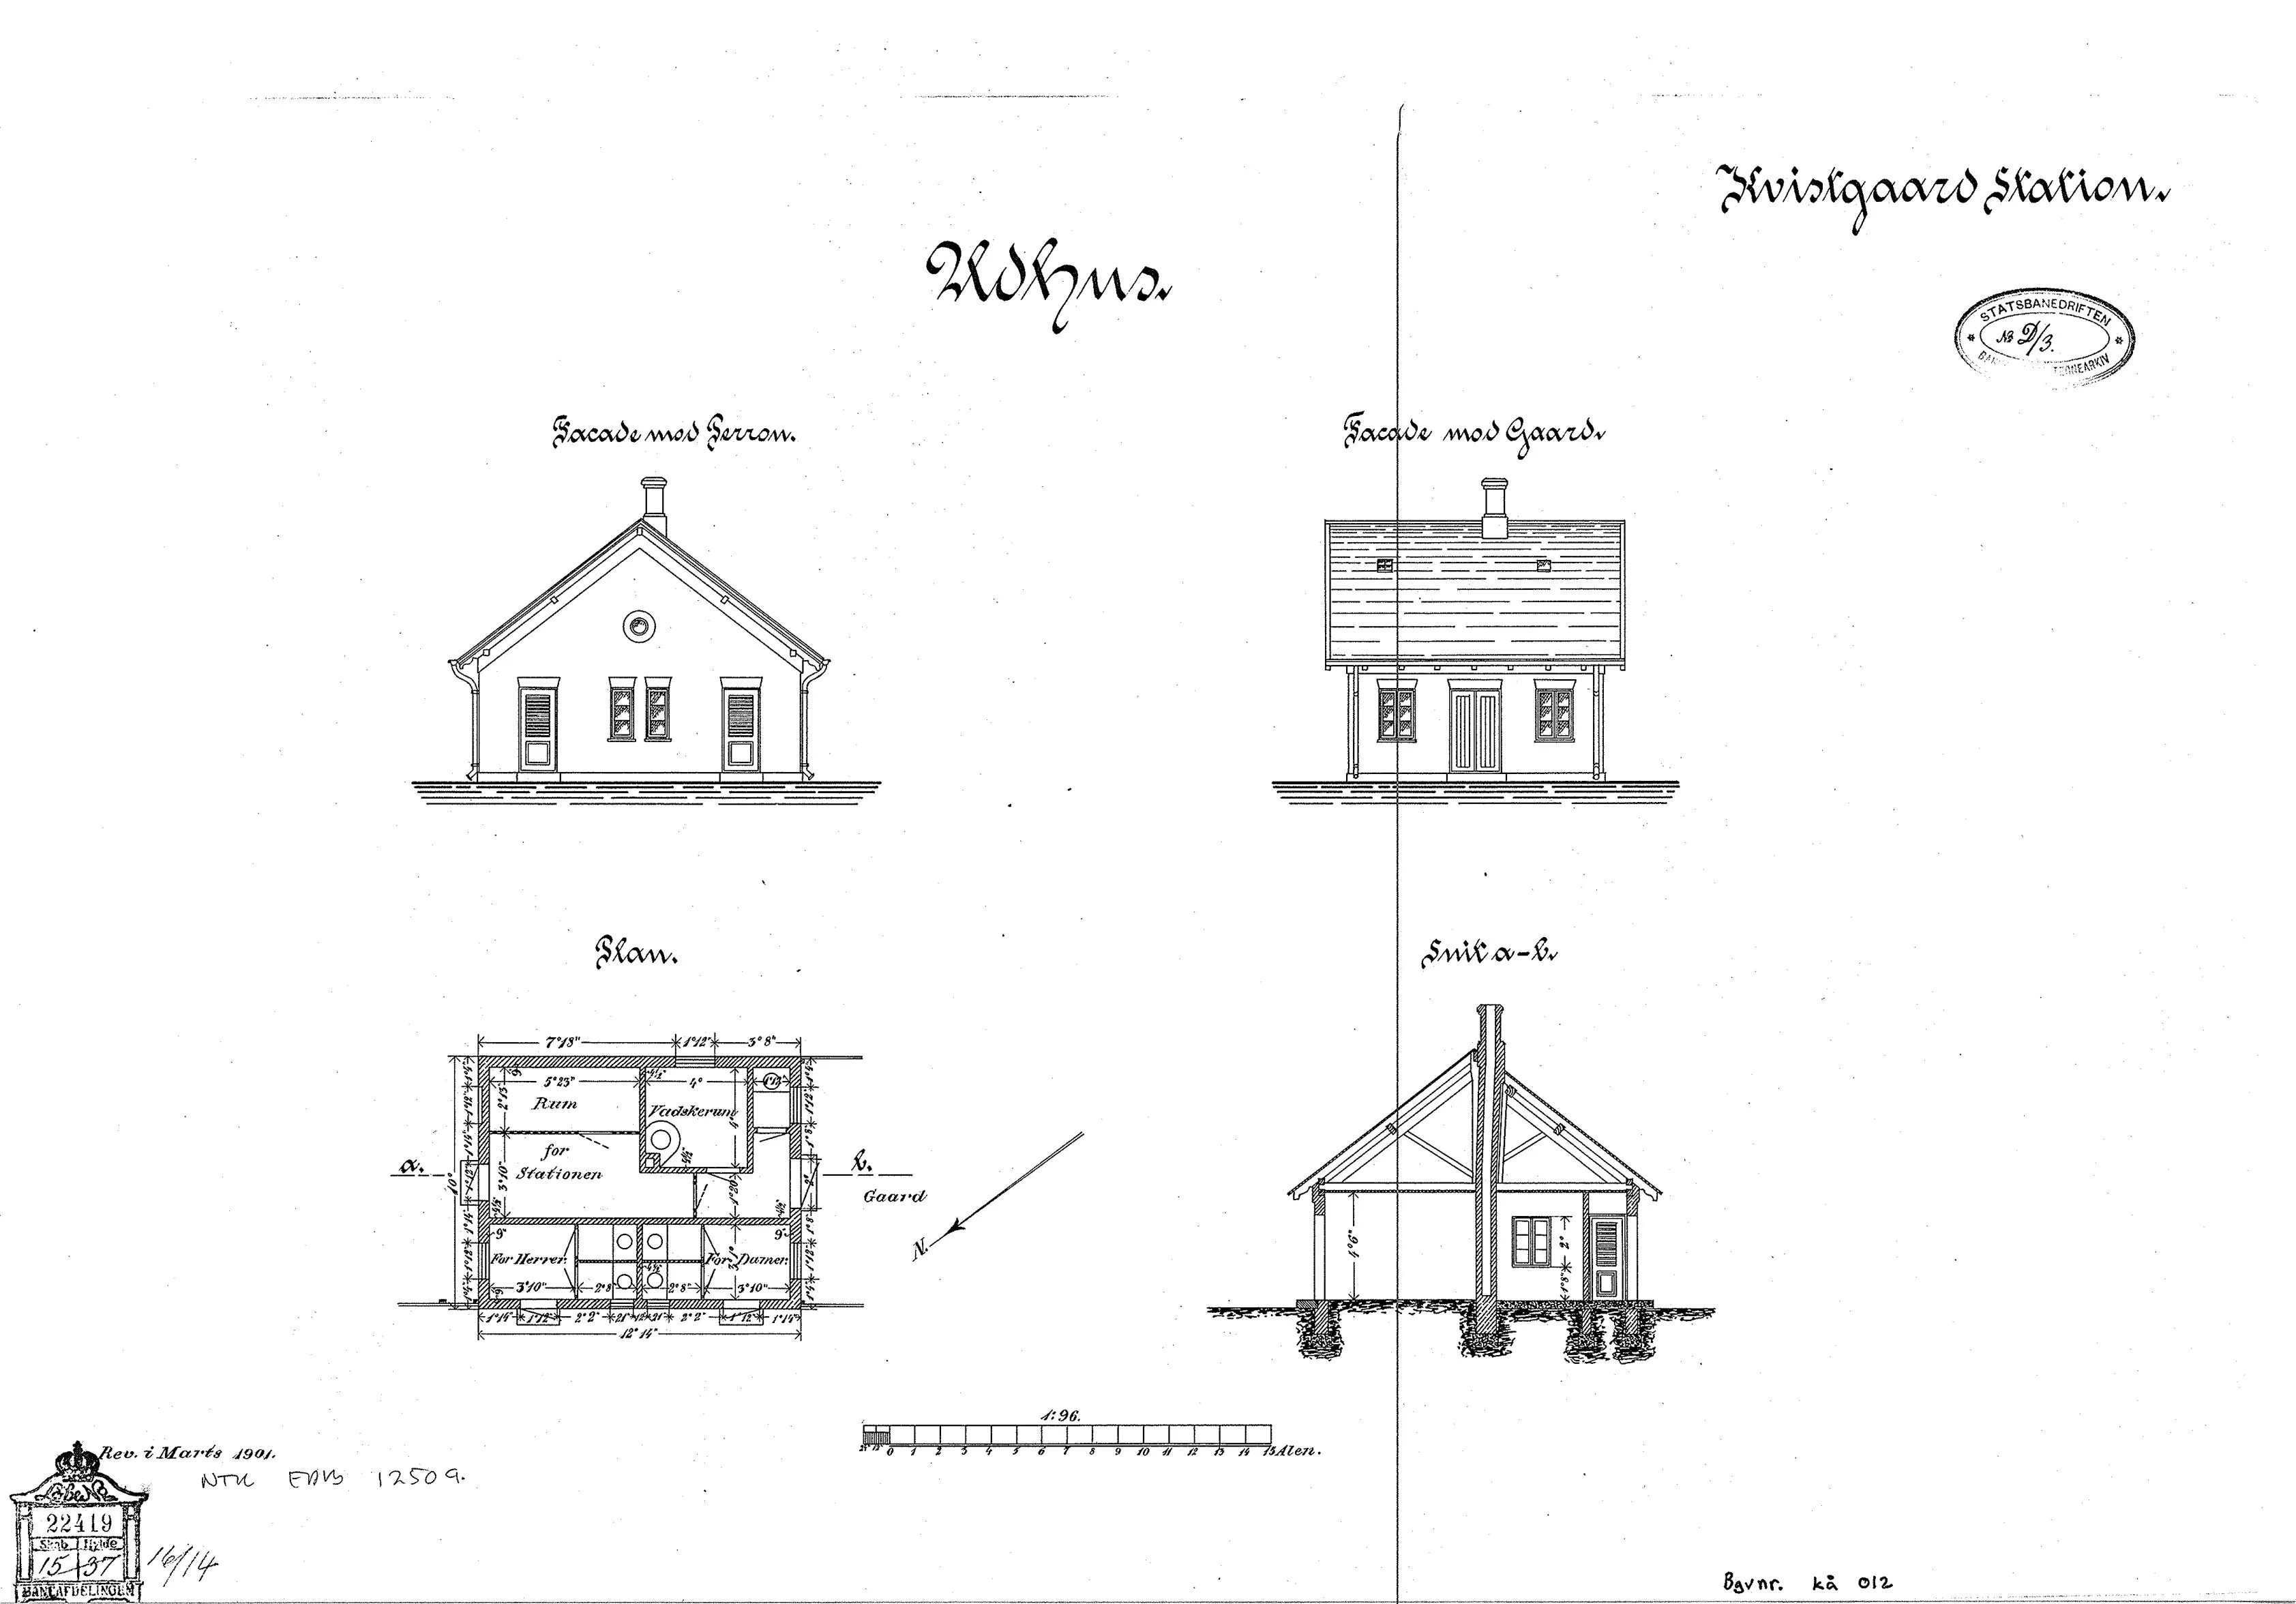 Tegning af Kvistgård Stations retirade.